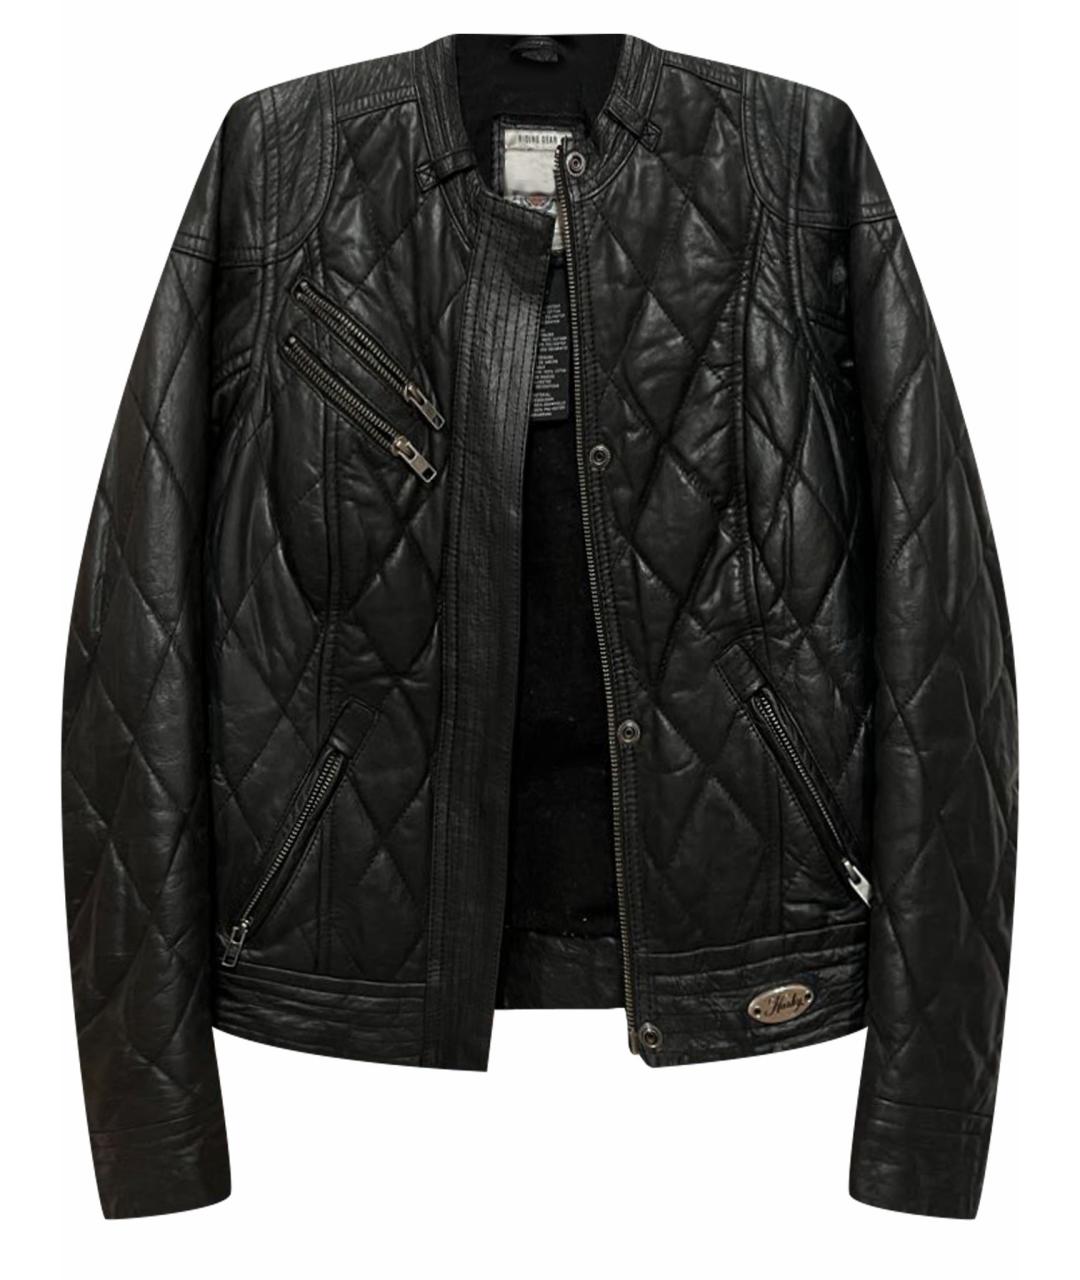 Harley Davidson Черная кожаная куртка, фото 1